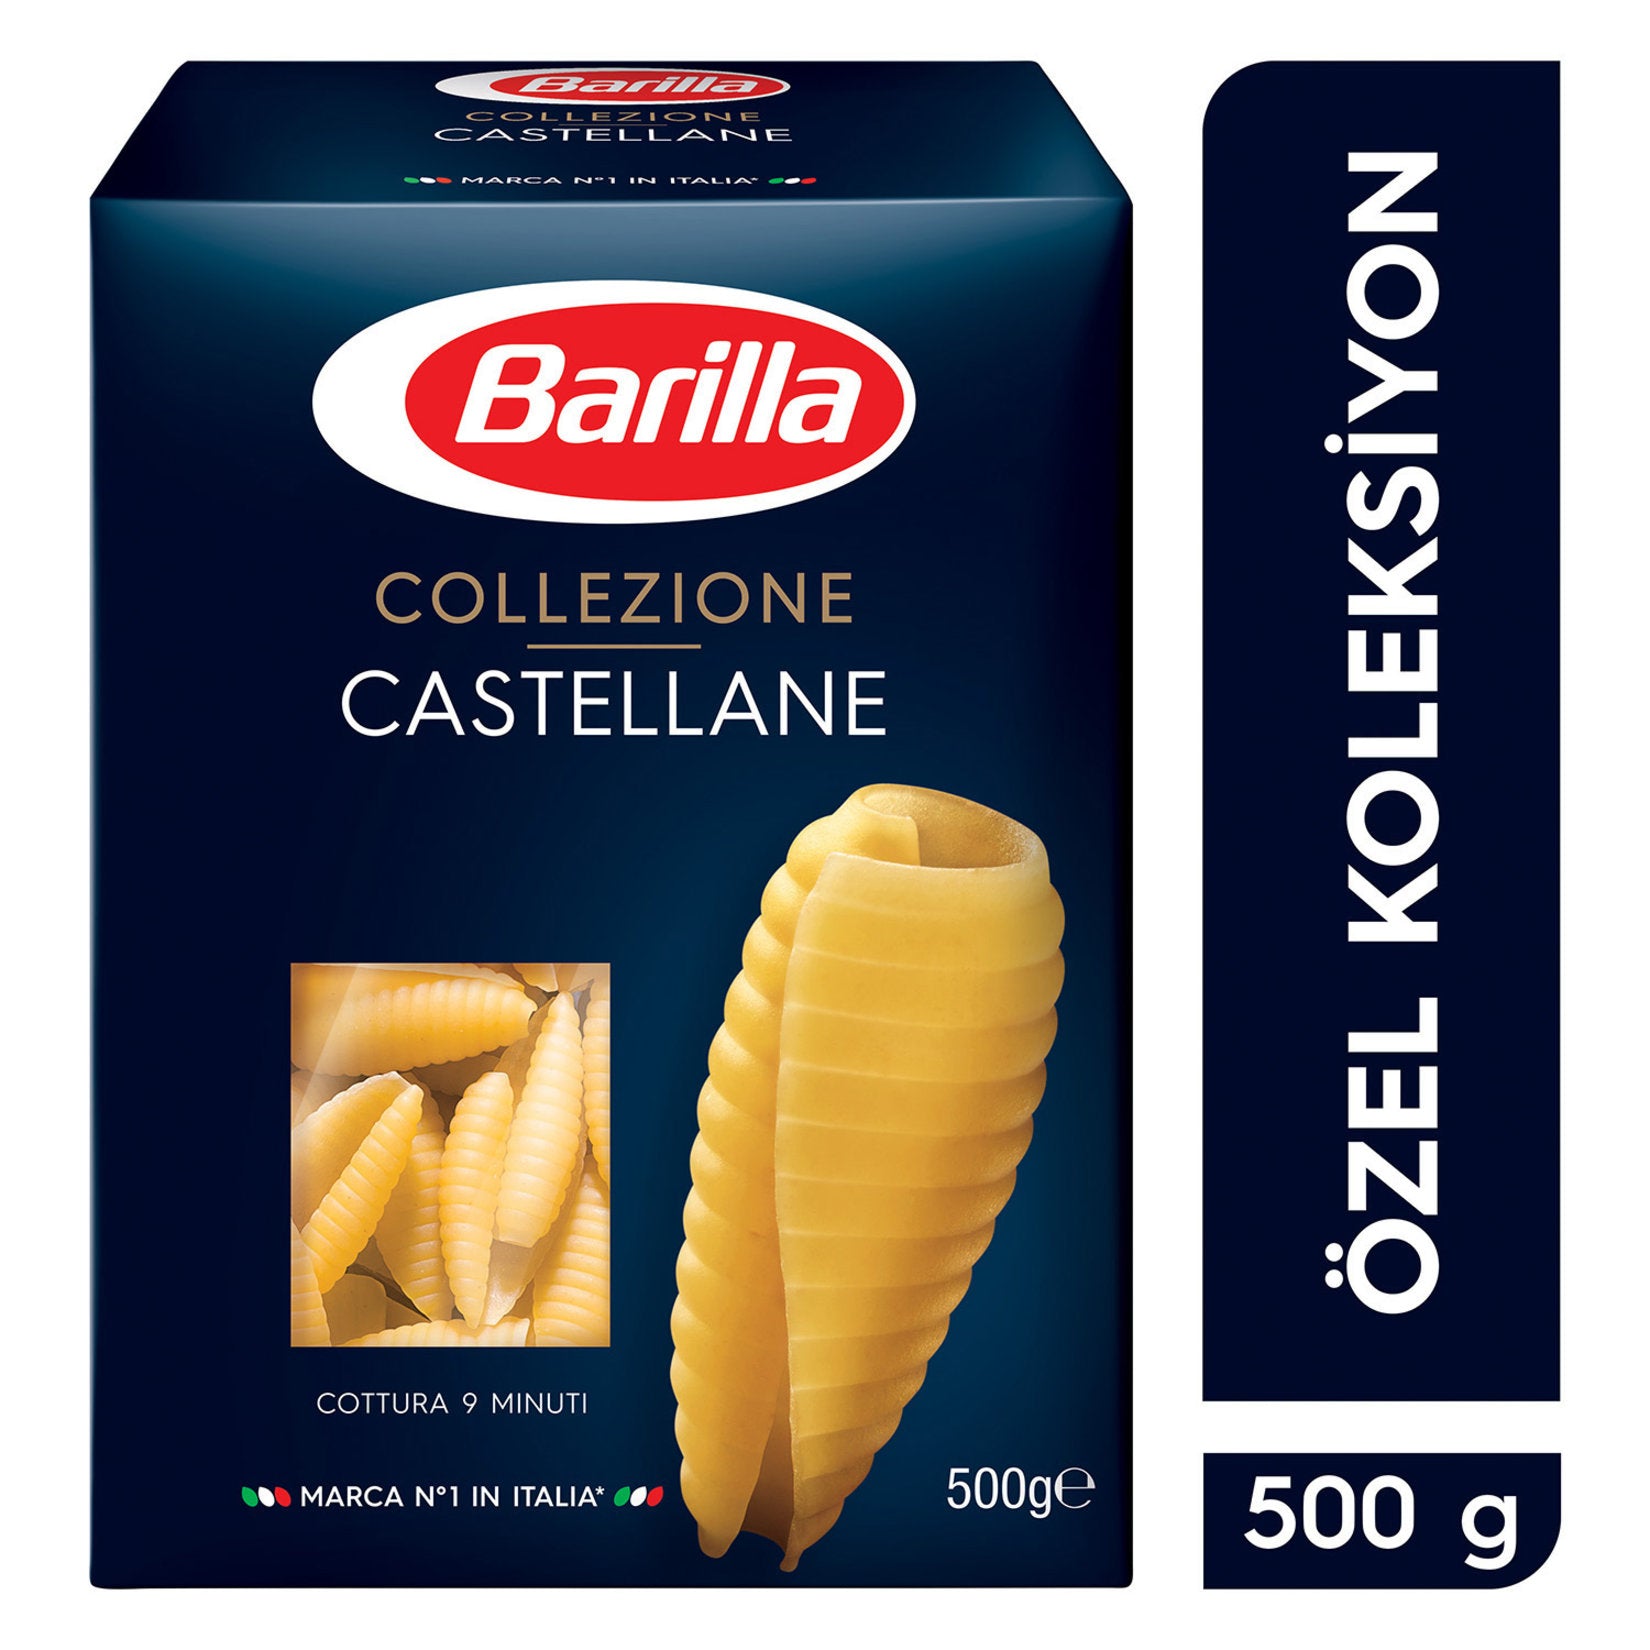 Castellane - Barilla - 500g